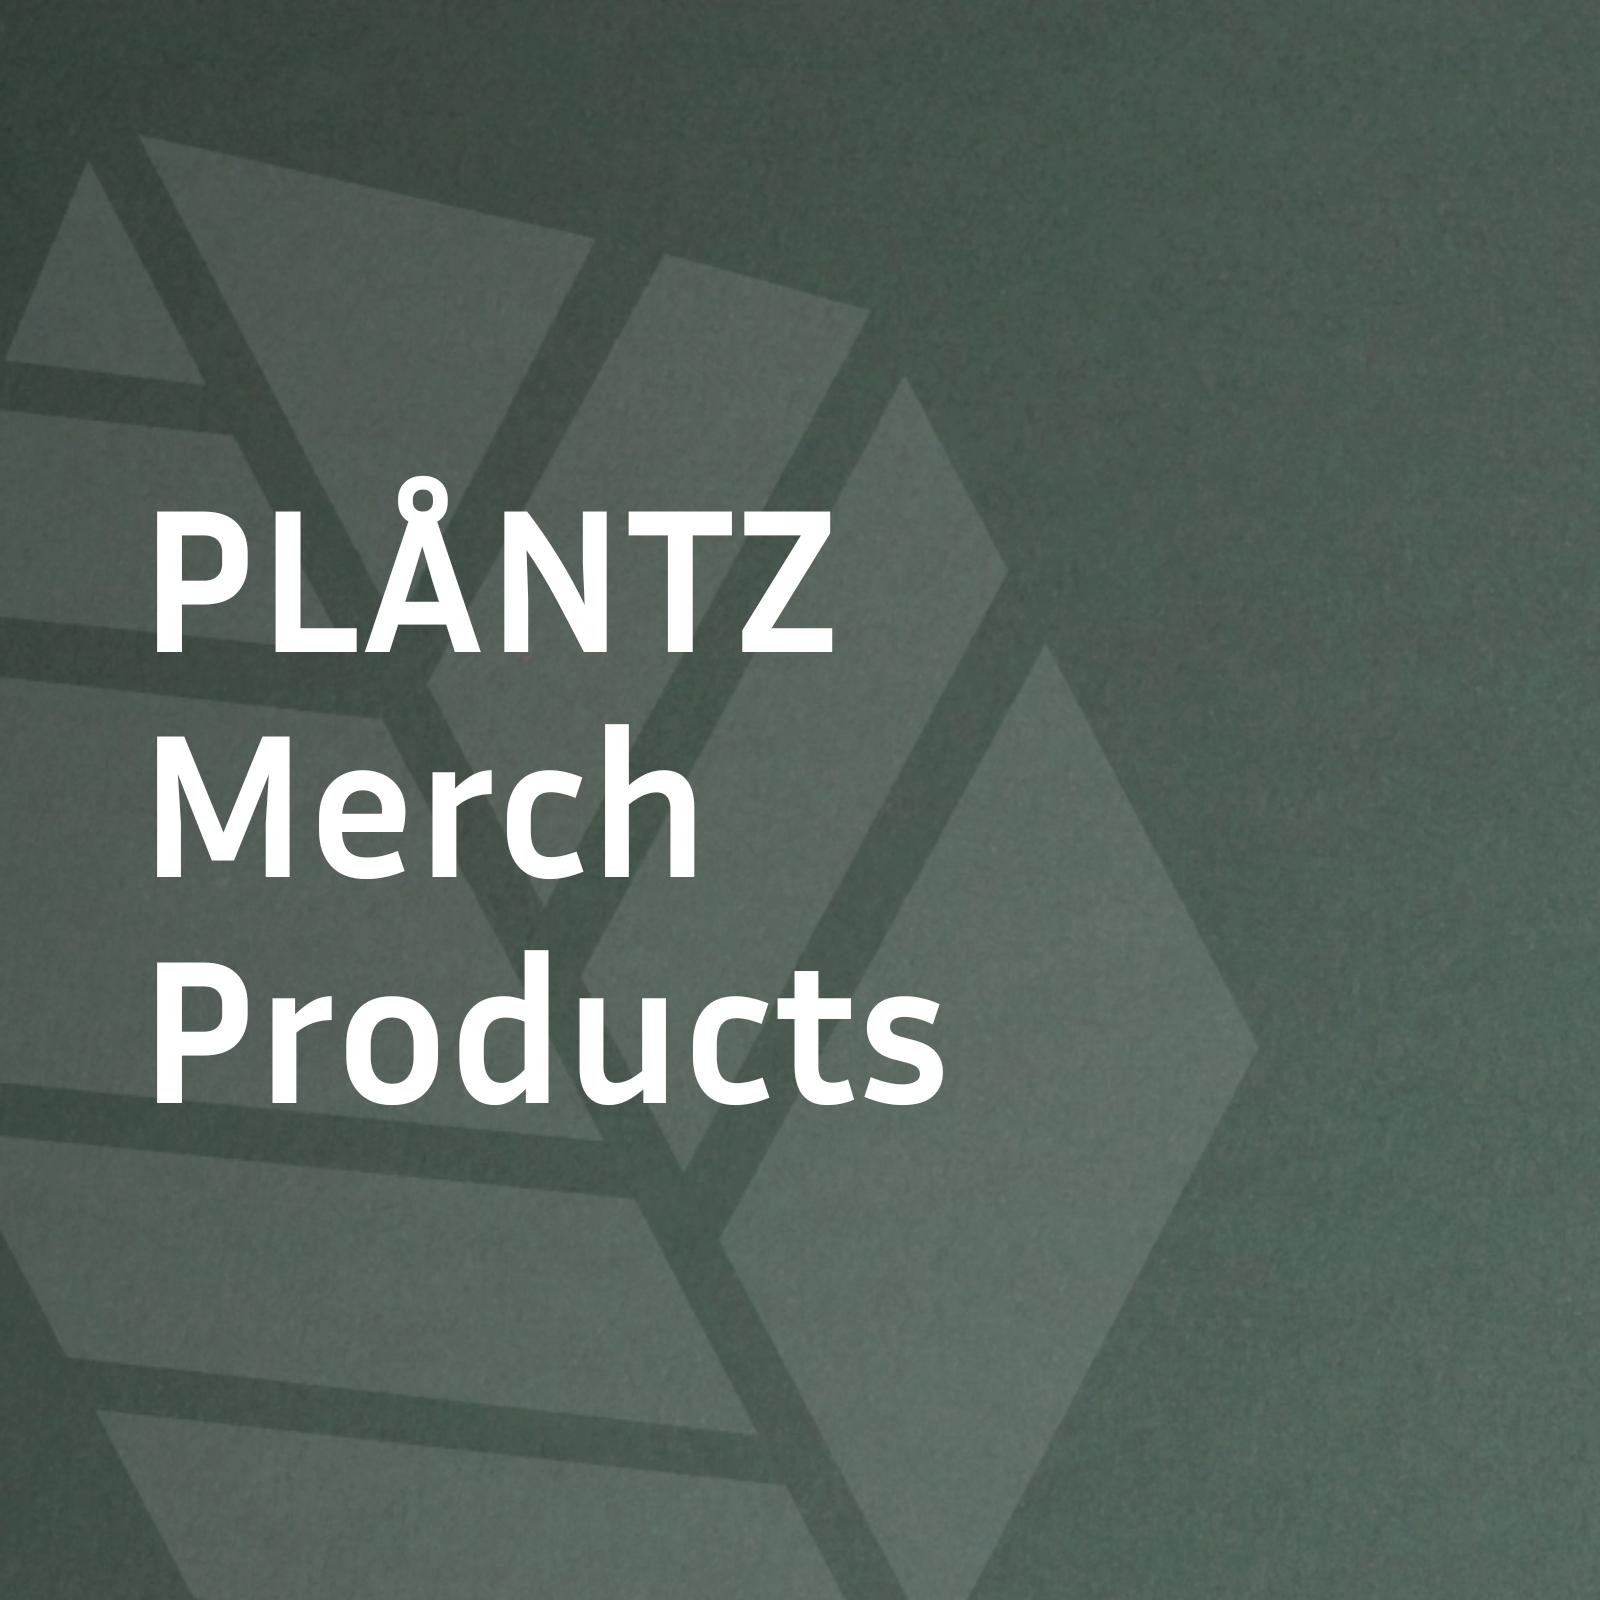 PLÅNTZ Merch Products